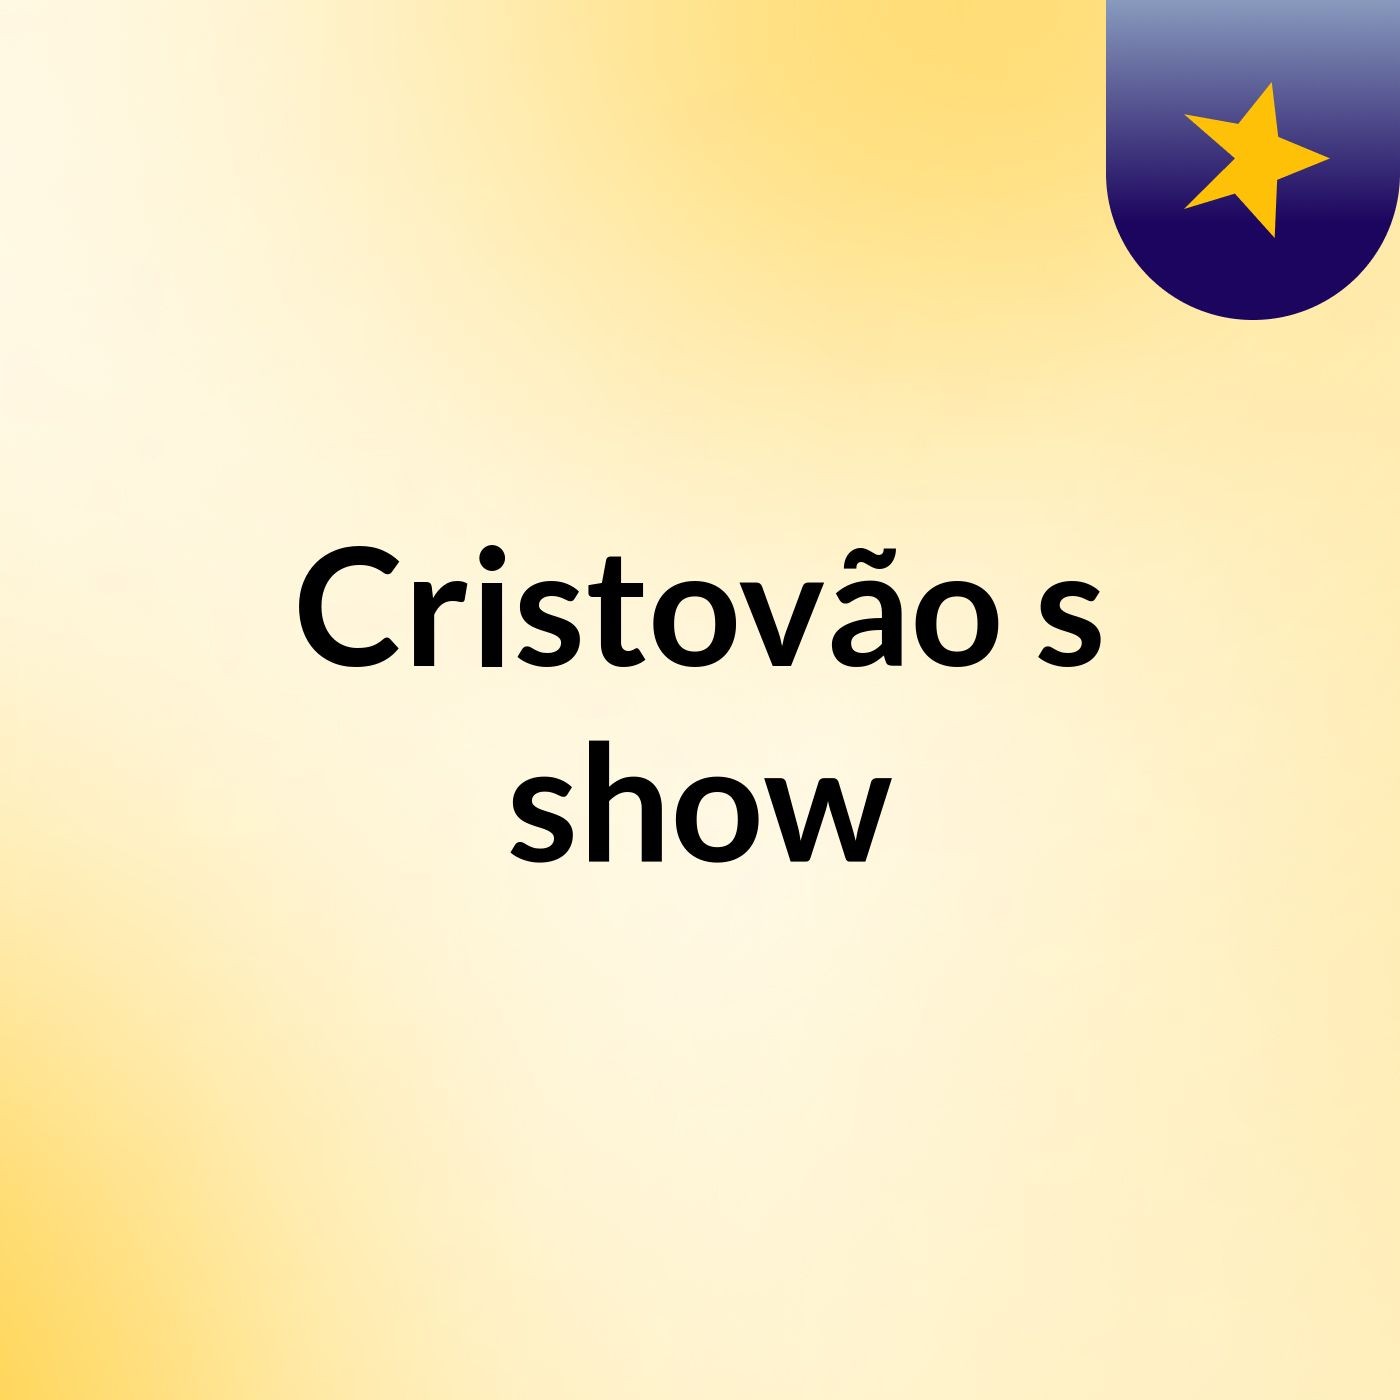 Cristovão's show